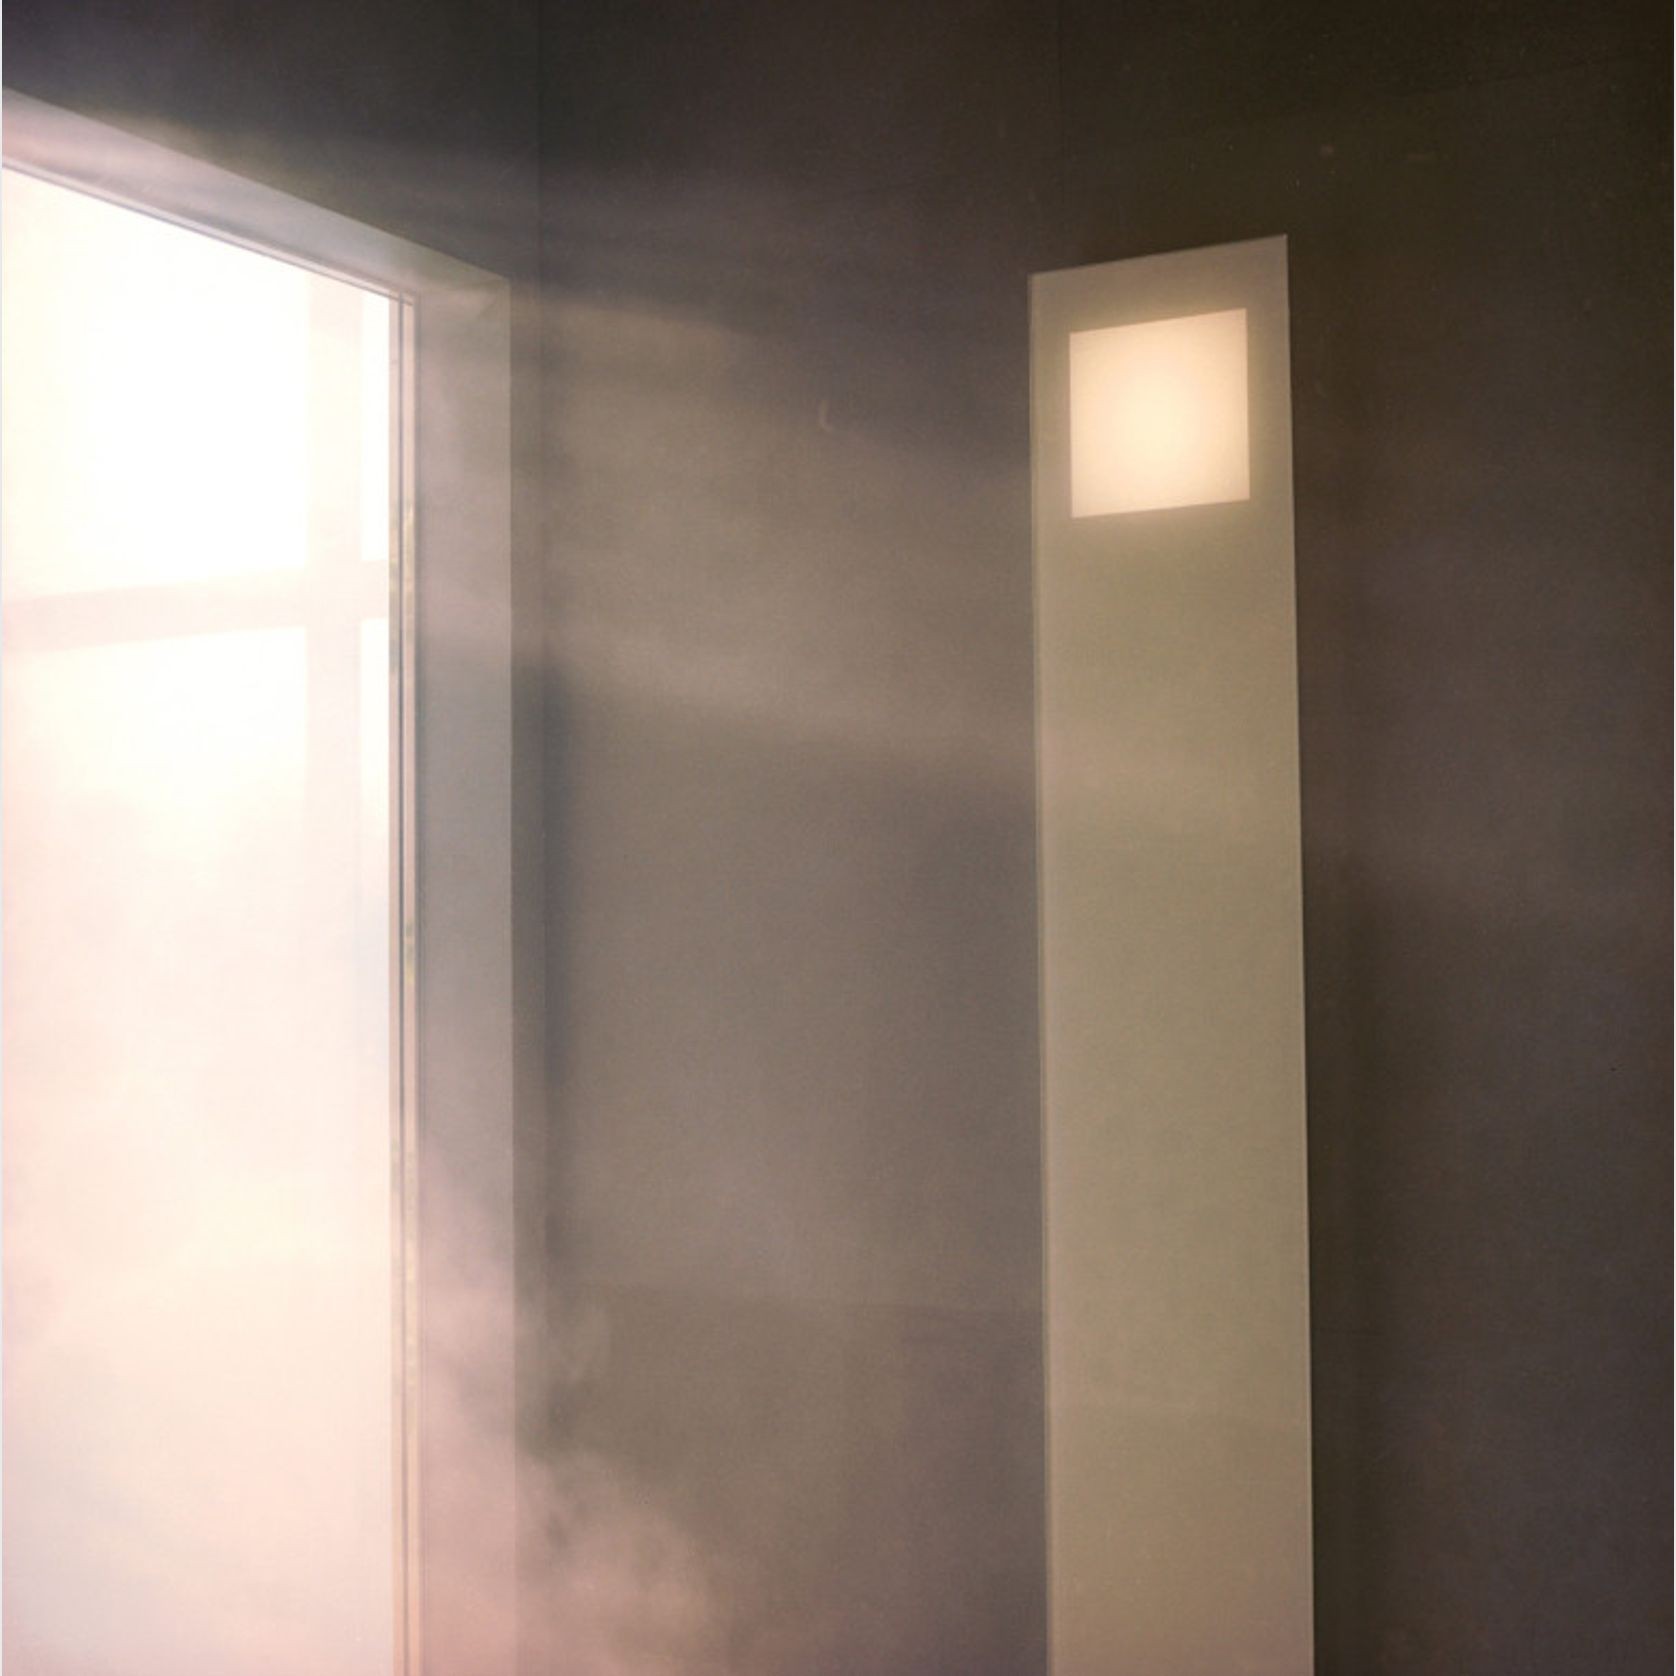 Hammam Steam Shower by Effe gallery detail image